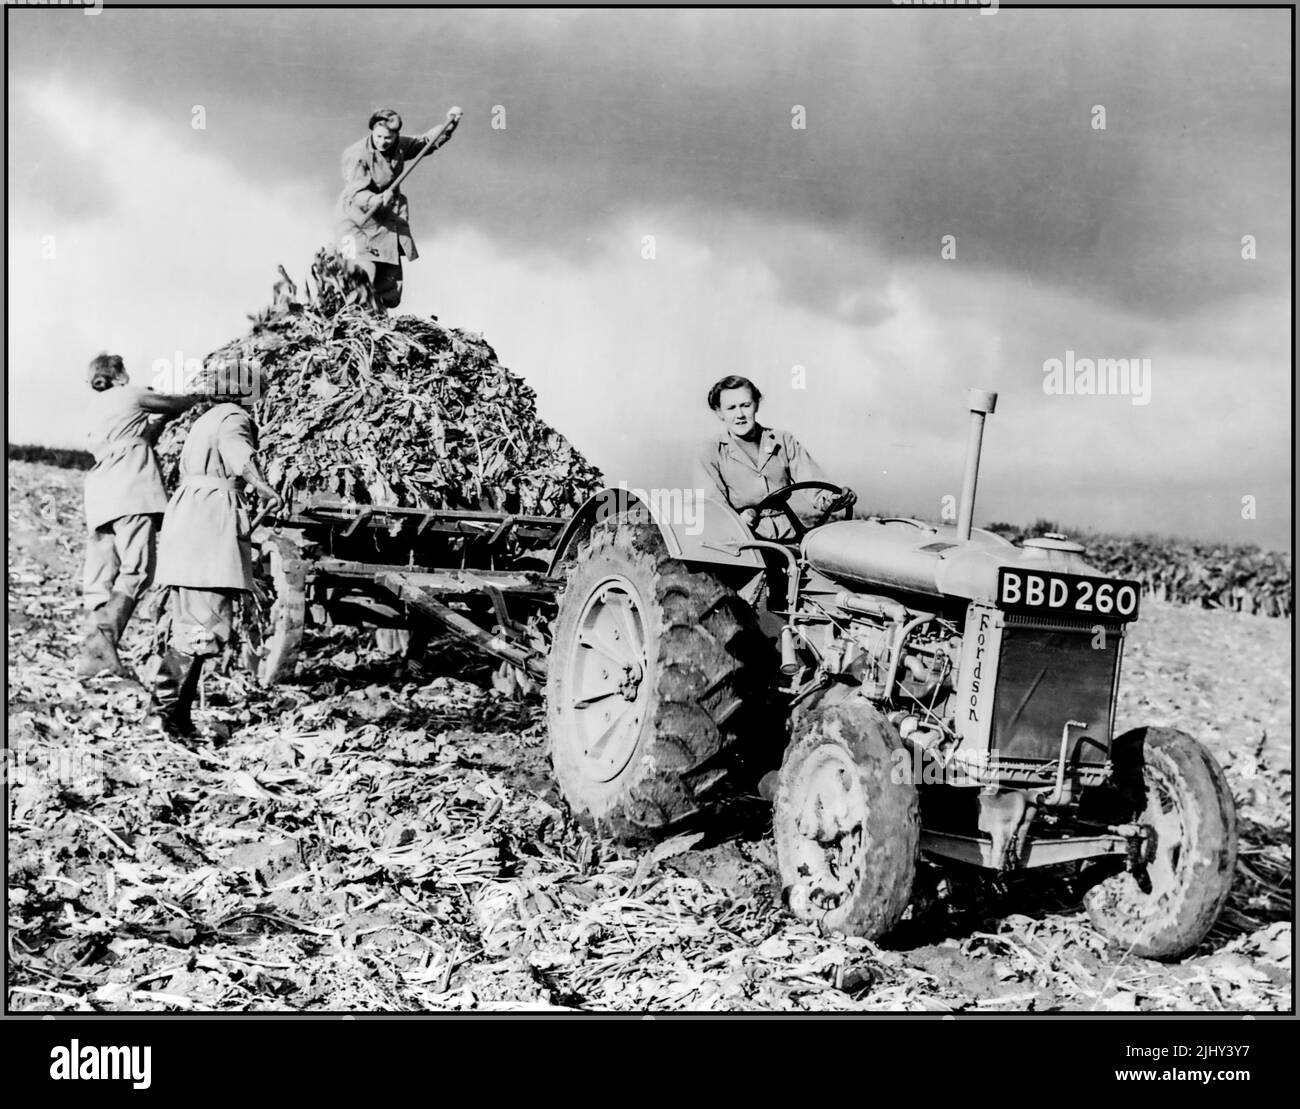 WW2 Ejército de Tierra de Mujeres WLA británico cosecha de remolachas imagen de propaganda. Una mujer está conduciendo un tractor Fordson en primer plano, mientras que otras tres con horquillas están cargando las remolachas en el camión detrás del tractor. Segunda Guerra Mundial Segunda Guerra Mundial WW2 Fecha circa 1943 Foto de stock